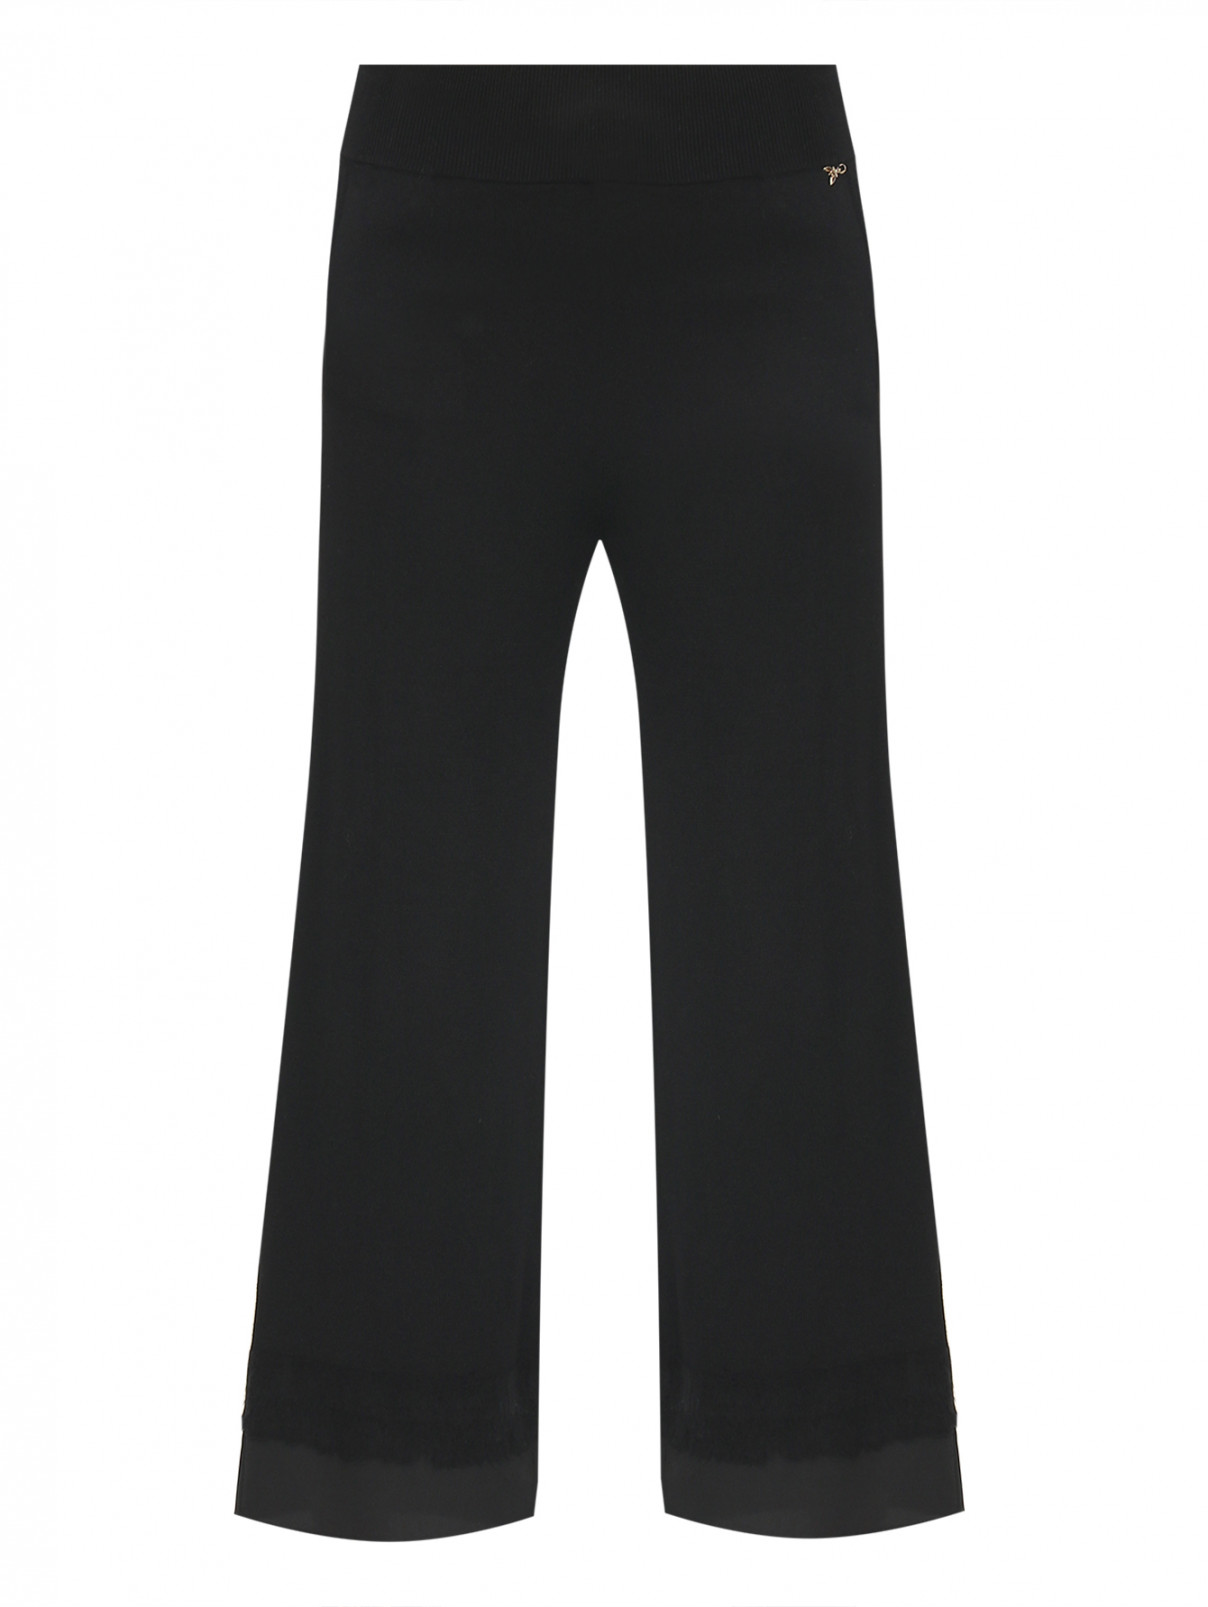 Трикотажные брюки на резинке Patrizia Pepe  –  Общий вид  – Цвет:  Черный